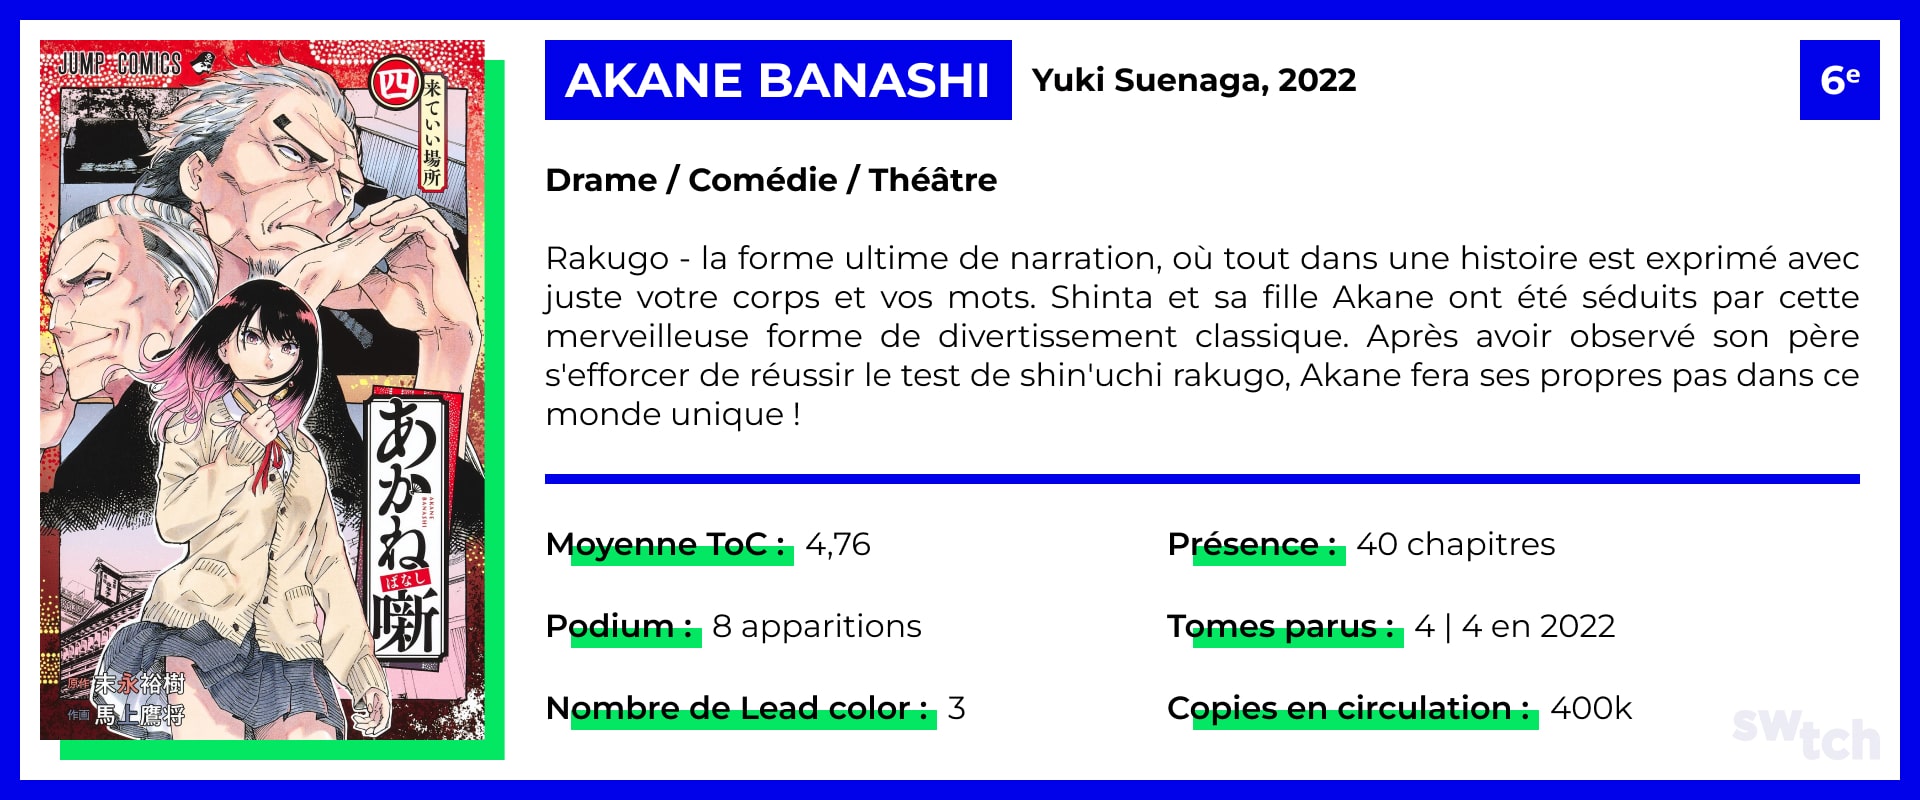 Akane Banashi